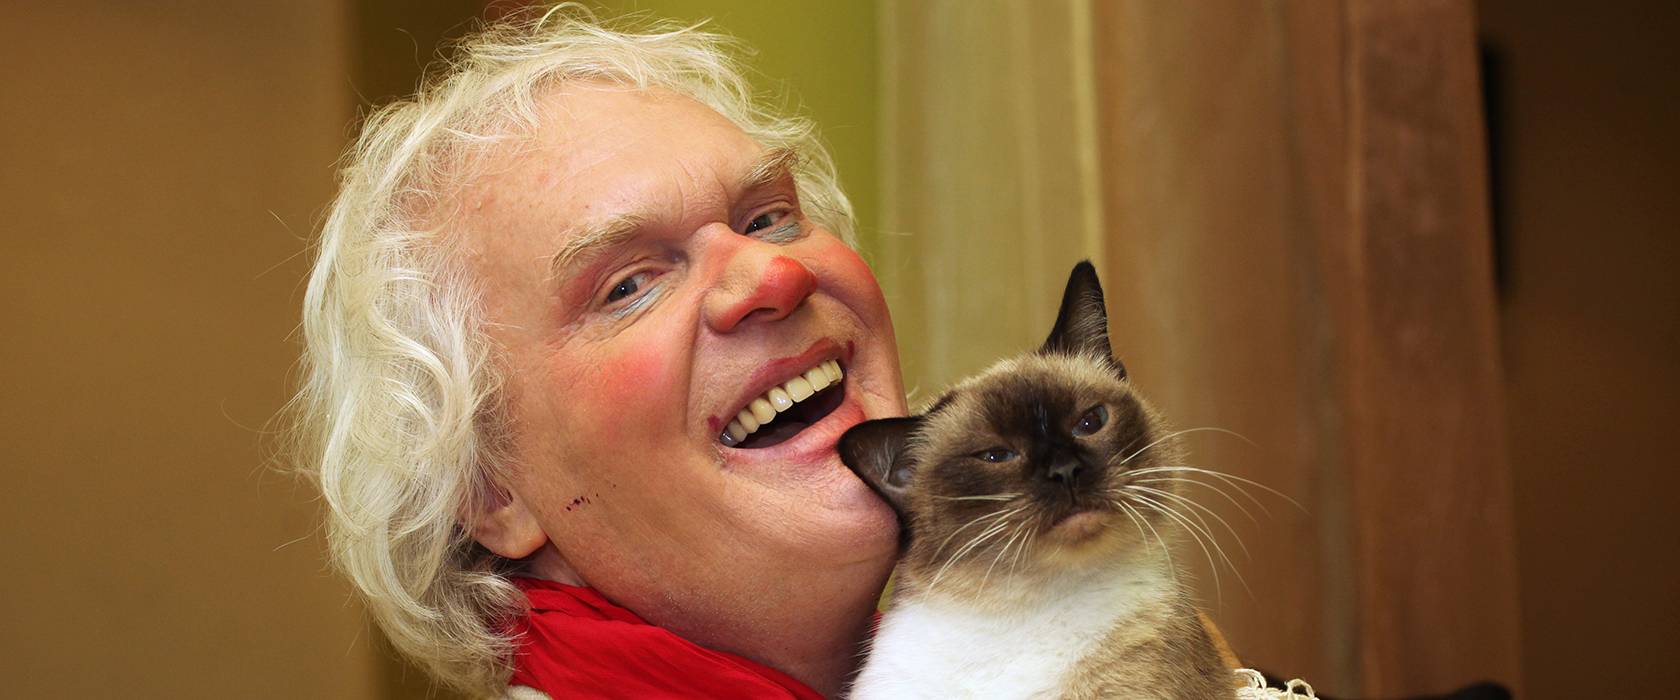 Юрий куклачев биография, фото, личная жизнь и его кошки 2020